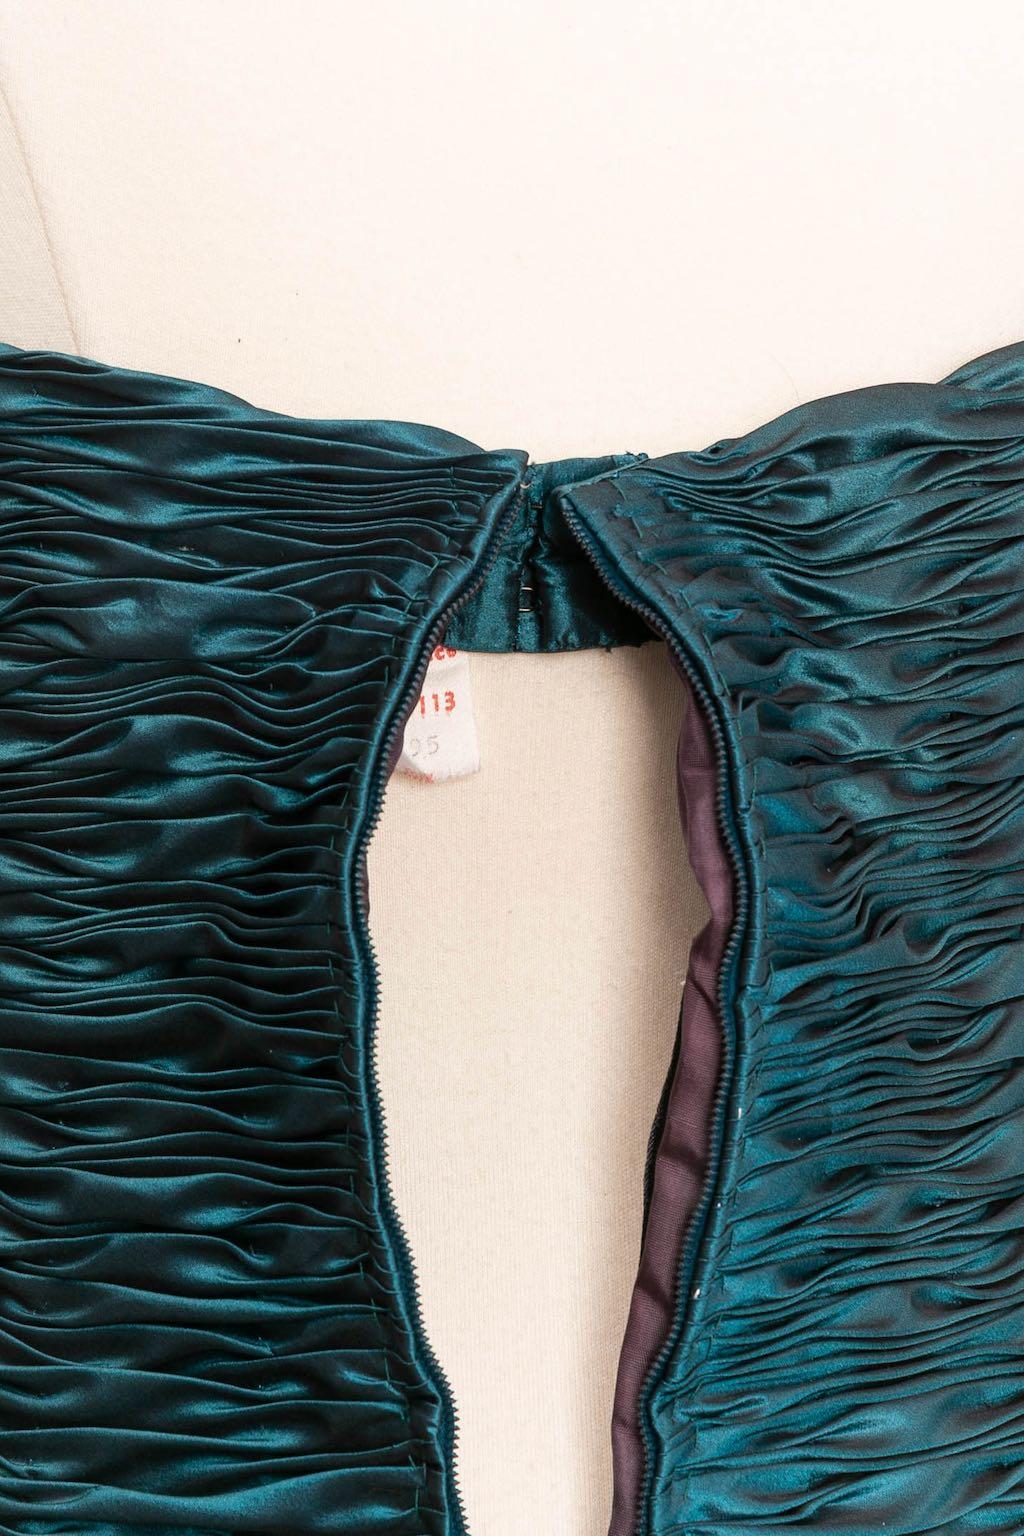 Loris Azzaro Haute Couture Bustier Dress, Size 36FR For Sale 4